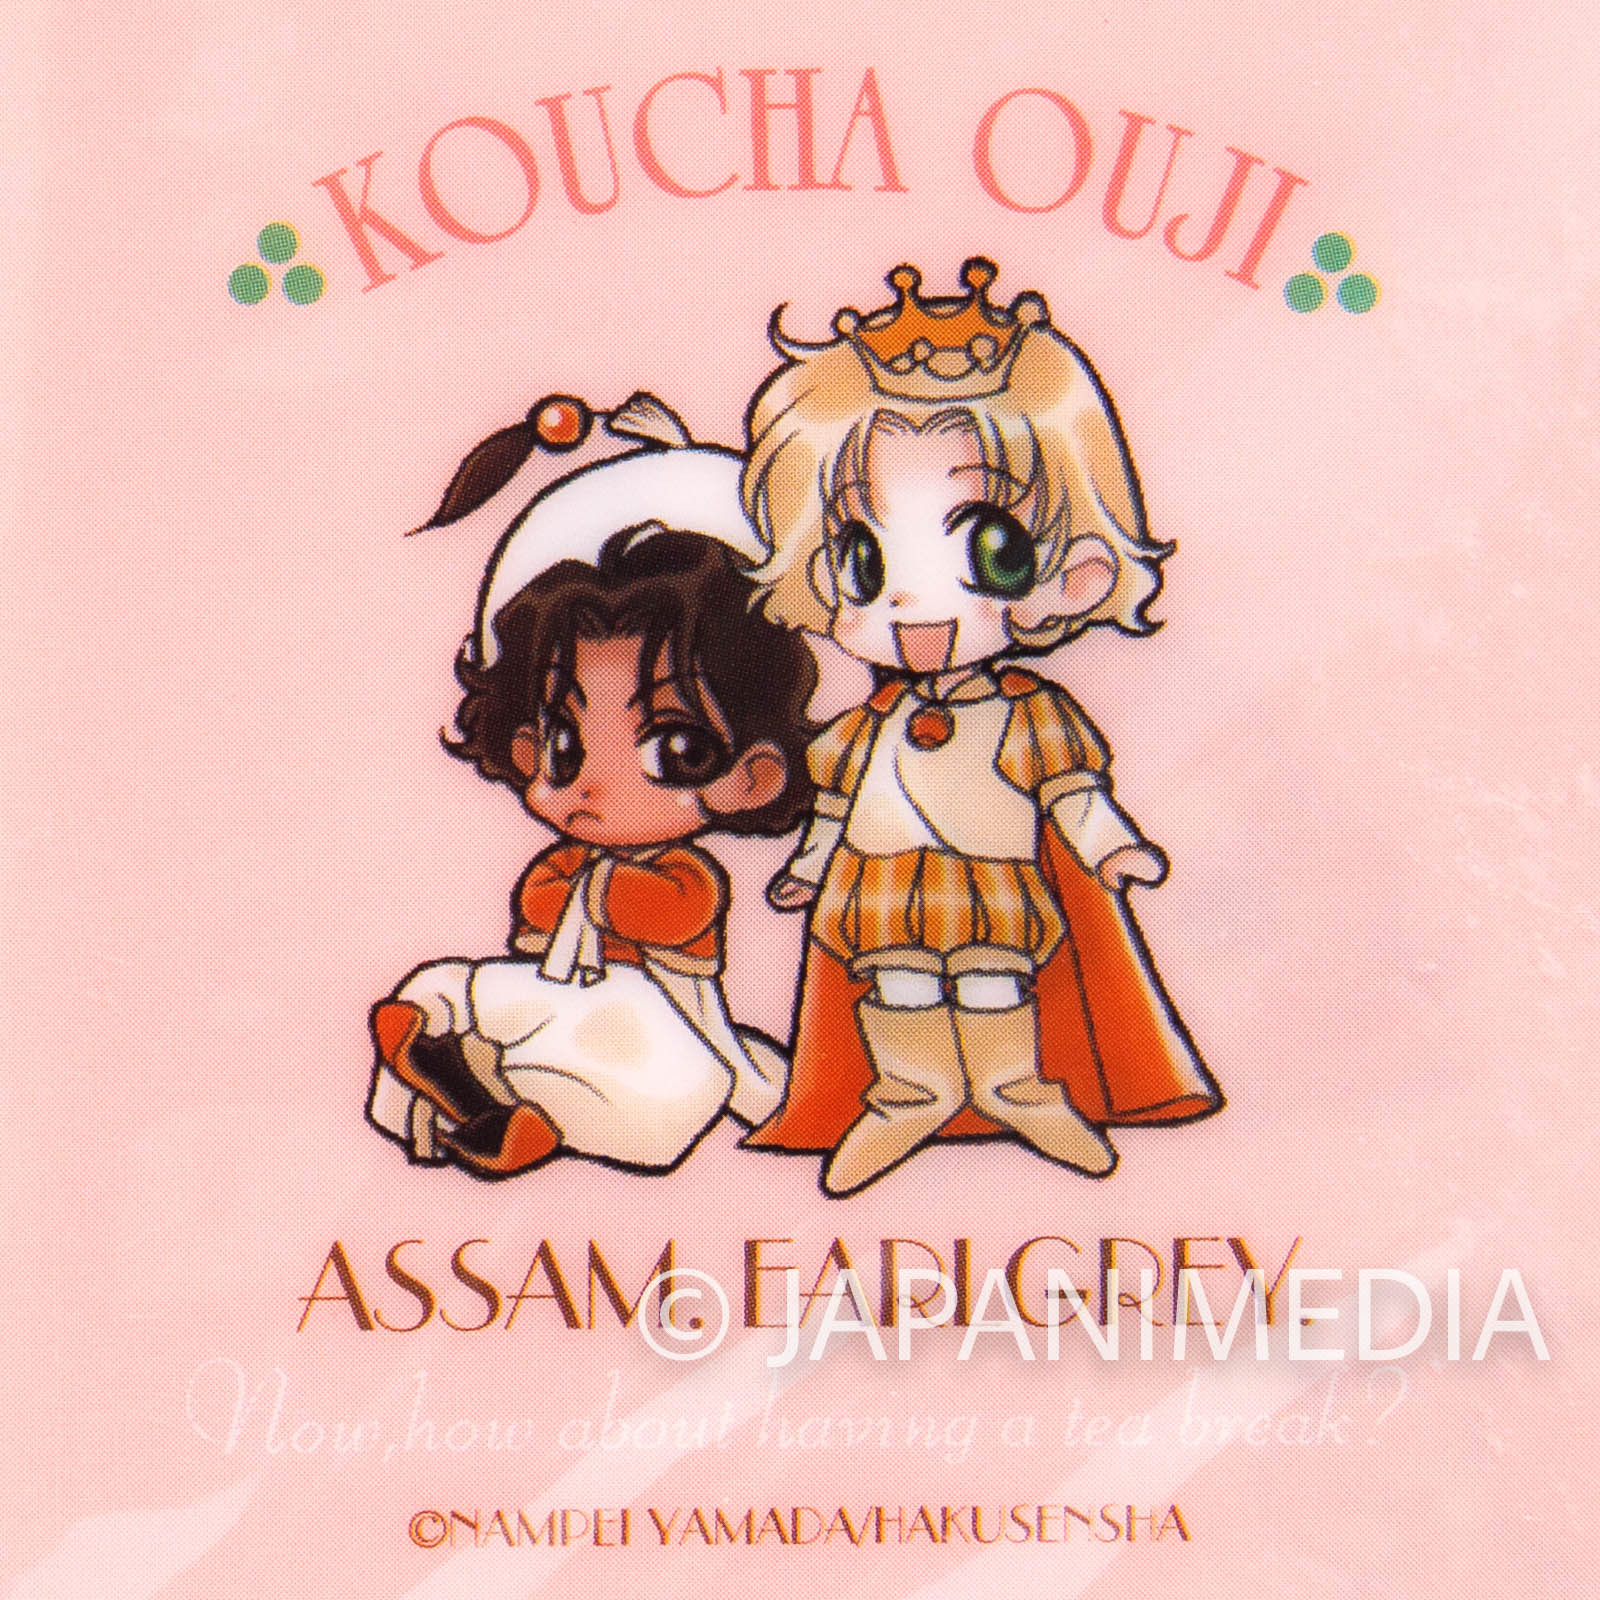 Koucha Ouji (Tea Prince) Clear Book jacket 2pc set JAPAN MANGA